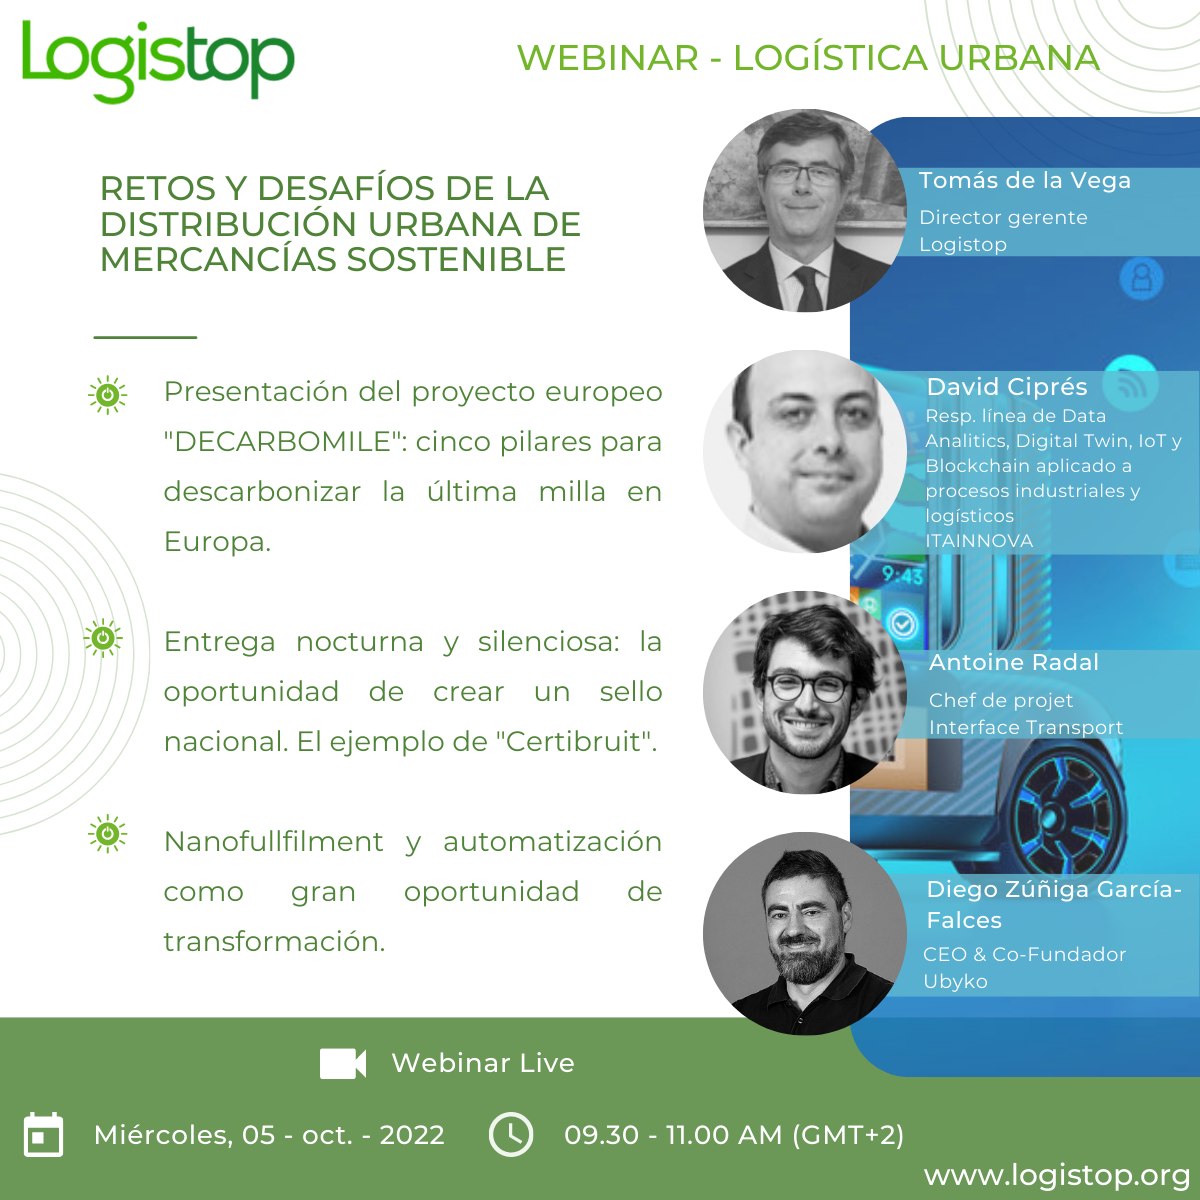 Webinar Logistop “Retos y desafíos de la Distribución Urbana de Mercancías sostenible”